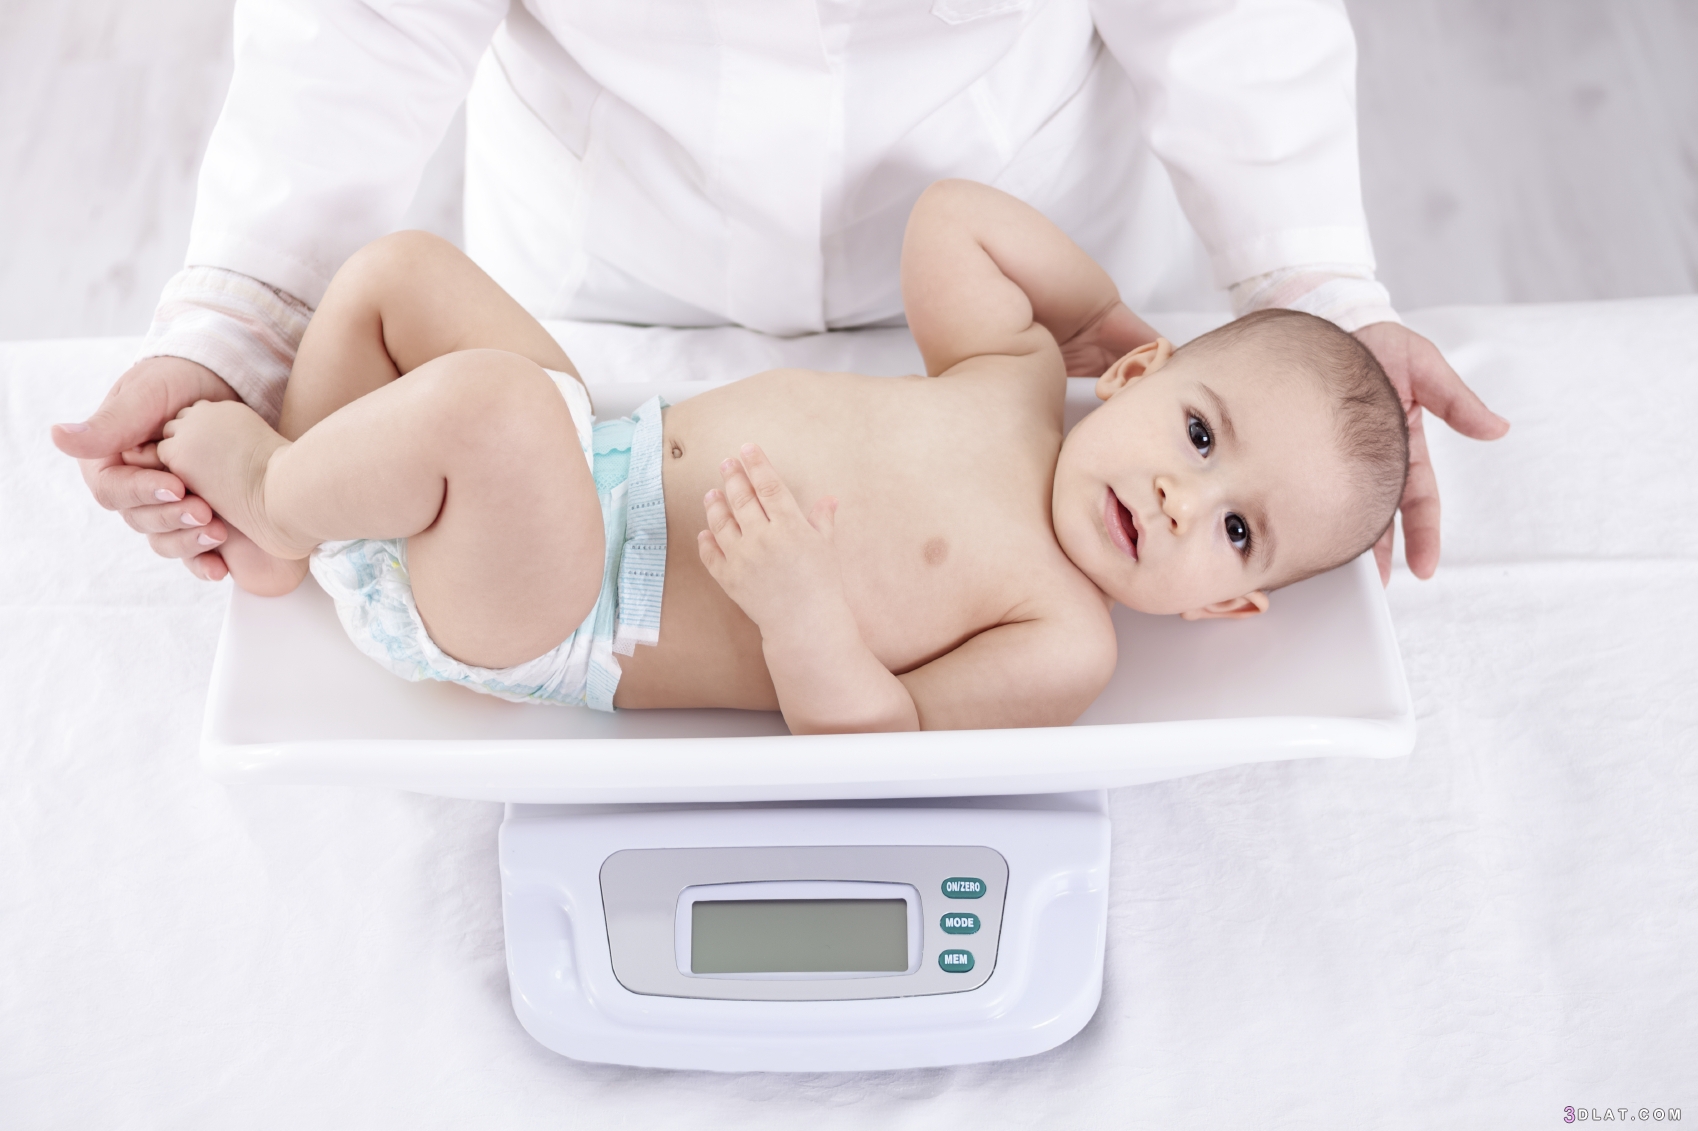 الوزن الطبيعي للأطفال حسب العمر، طرق أساسية للحفاظ على وزن   صحي لطفلك